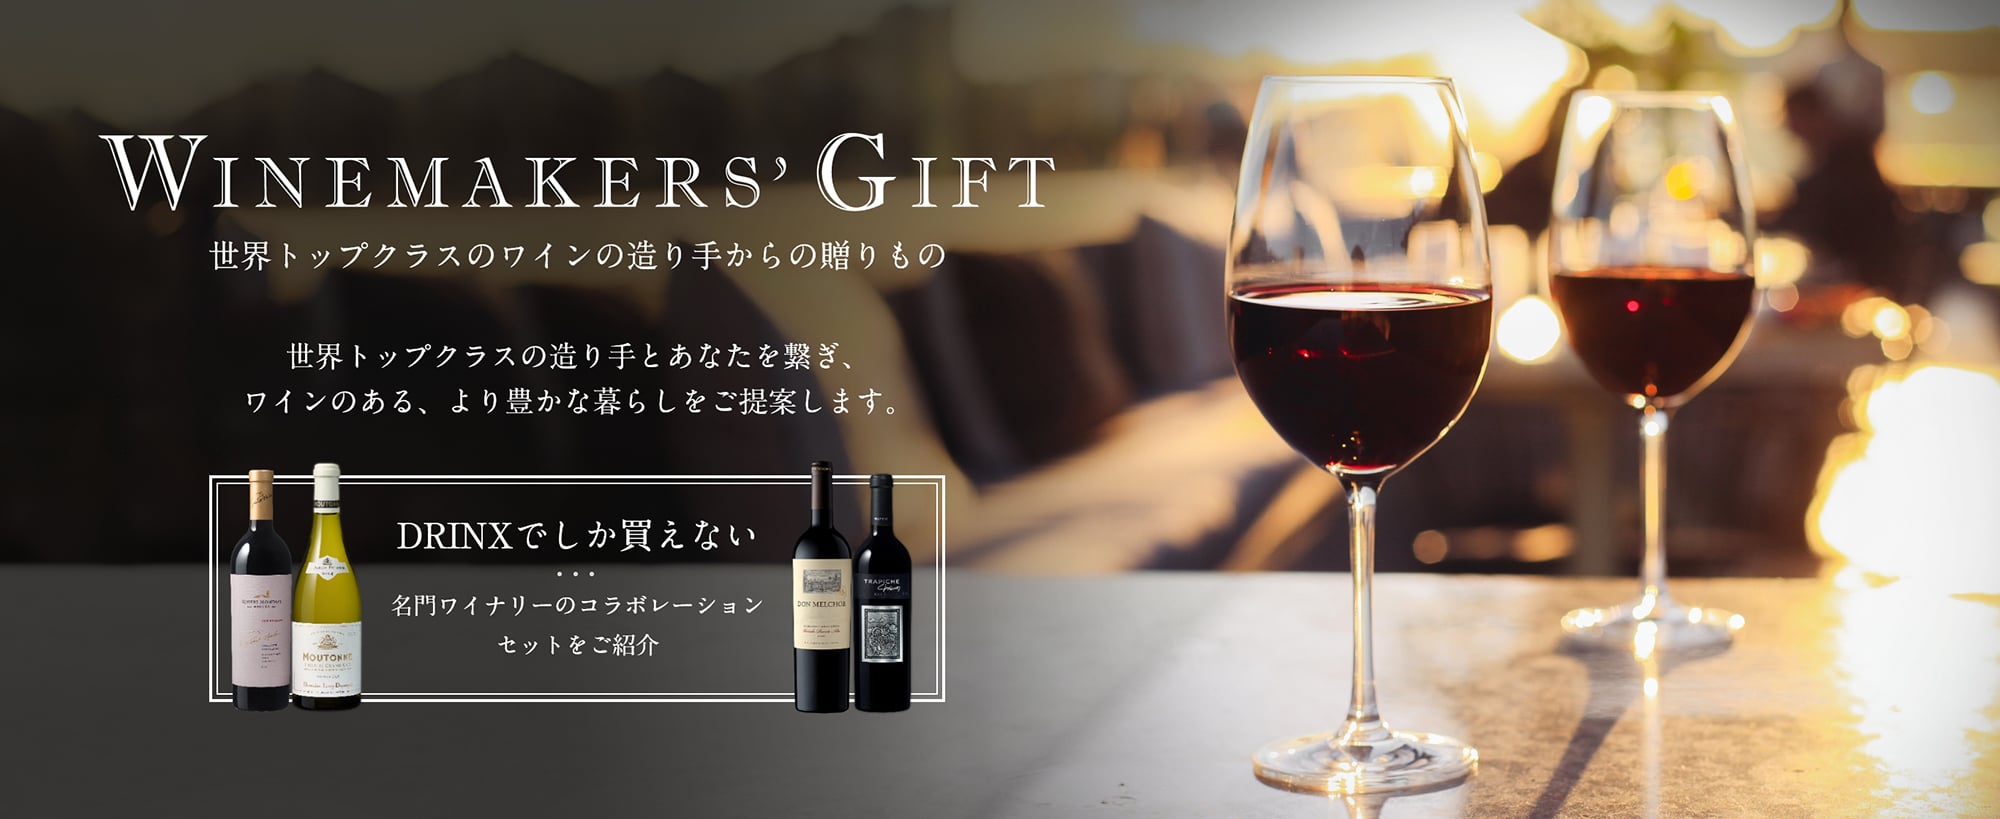 Winemakers' Gift 世界トップクラスのワインの造り手からの贈りもの 世界トップクラスの造り手とあなたを繋ぎ、ワインのある、より豊かな暮らしをご提案します。DRINXでしか買えない 名門ワイナリーのコラボレーションセットをご紹介